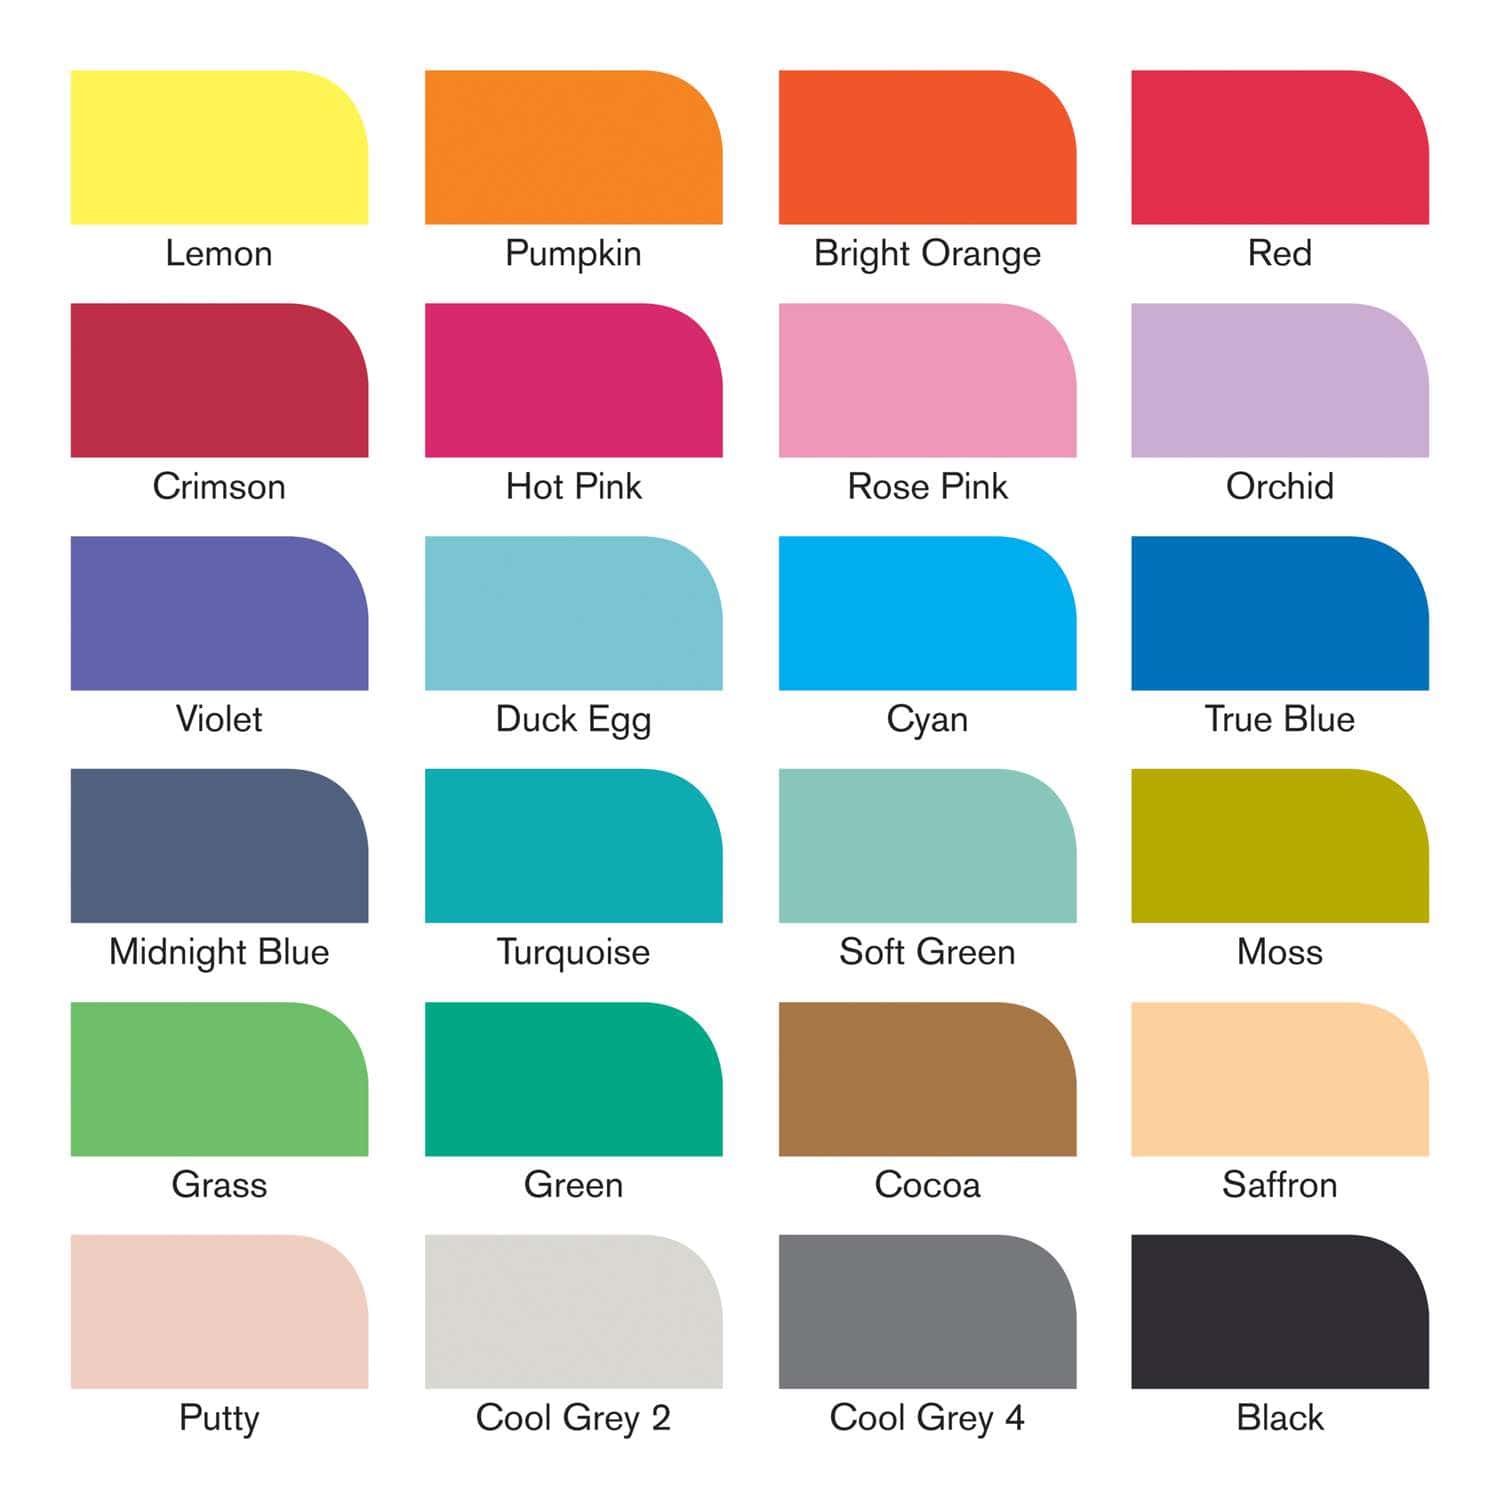 Marqueurs de points colorés Marqueur de points de numéro de sport 1 à 15  marqueurs de numéro de tapis avec 5 couleurs A2 - Cdiscount Beaux-Arts et  Loisirs créatifs